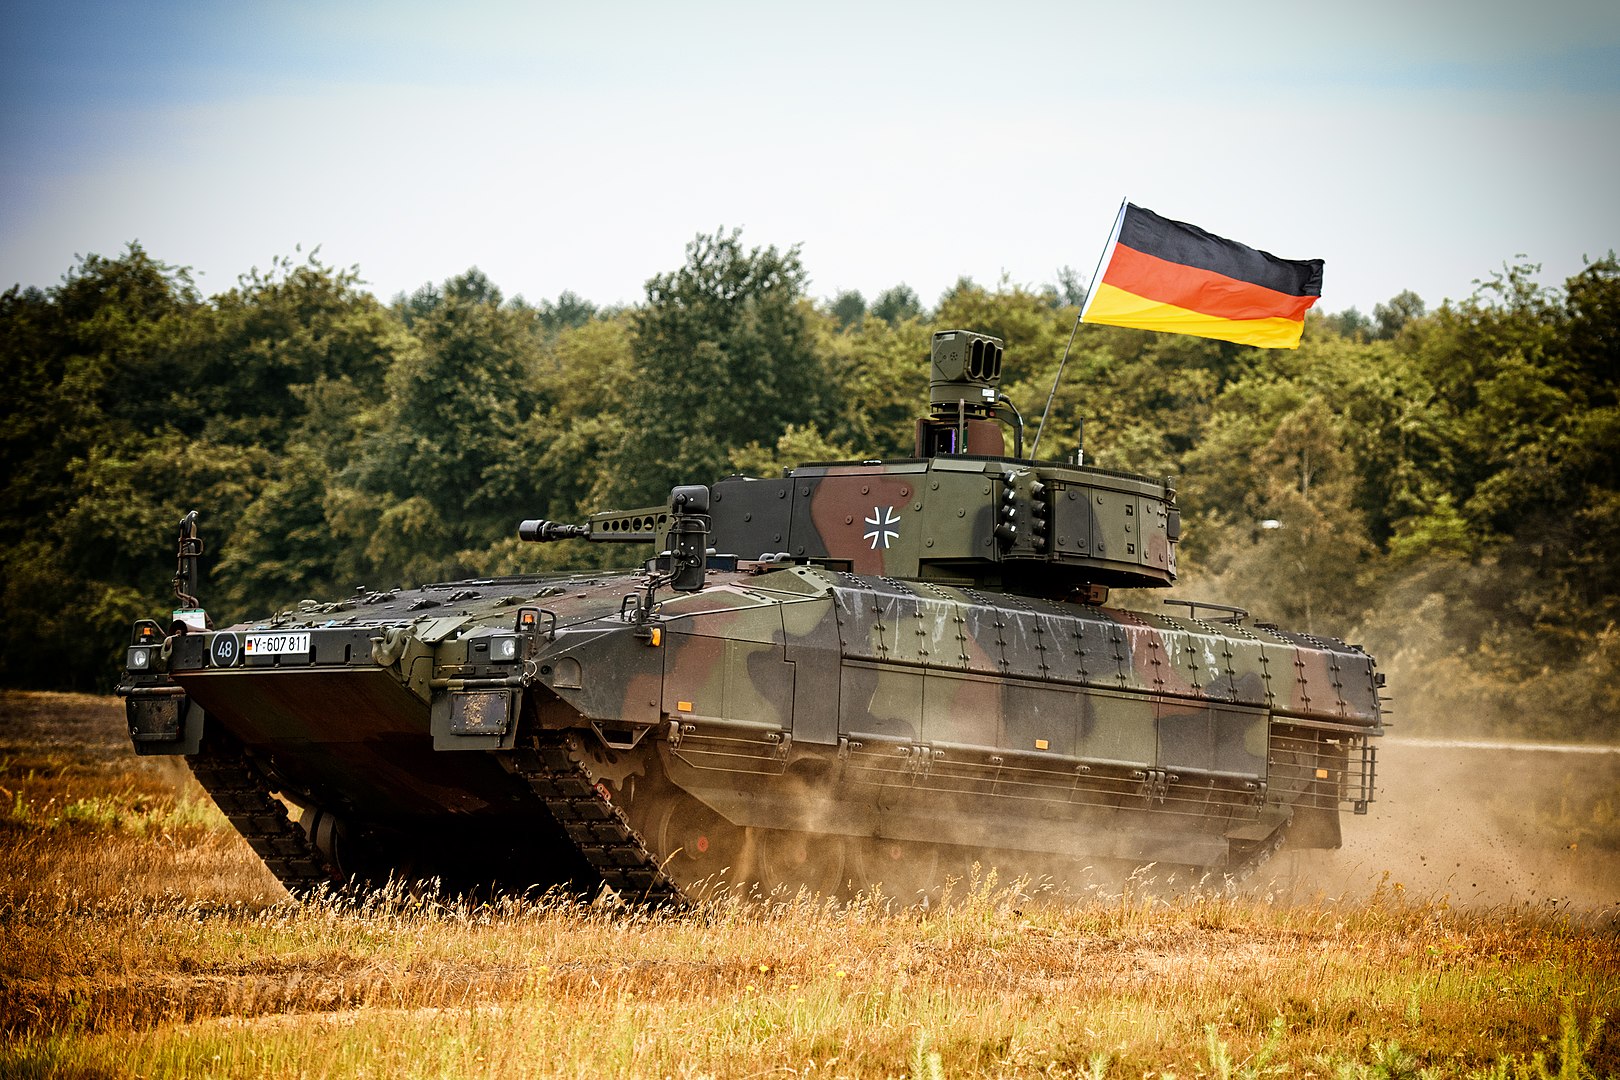 Niemcy mają 18 wycofanych z użytku BMP Puma o wartości 17 mln dolarów - najdroższy bojowy wóz piechoty na świecie